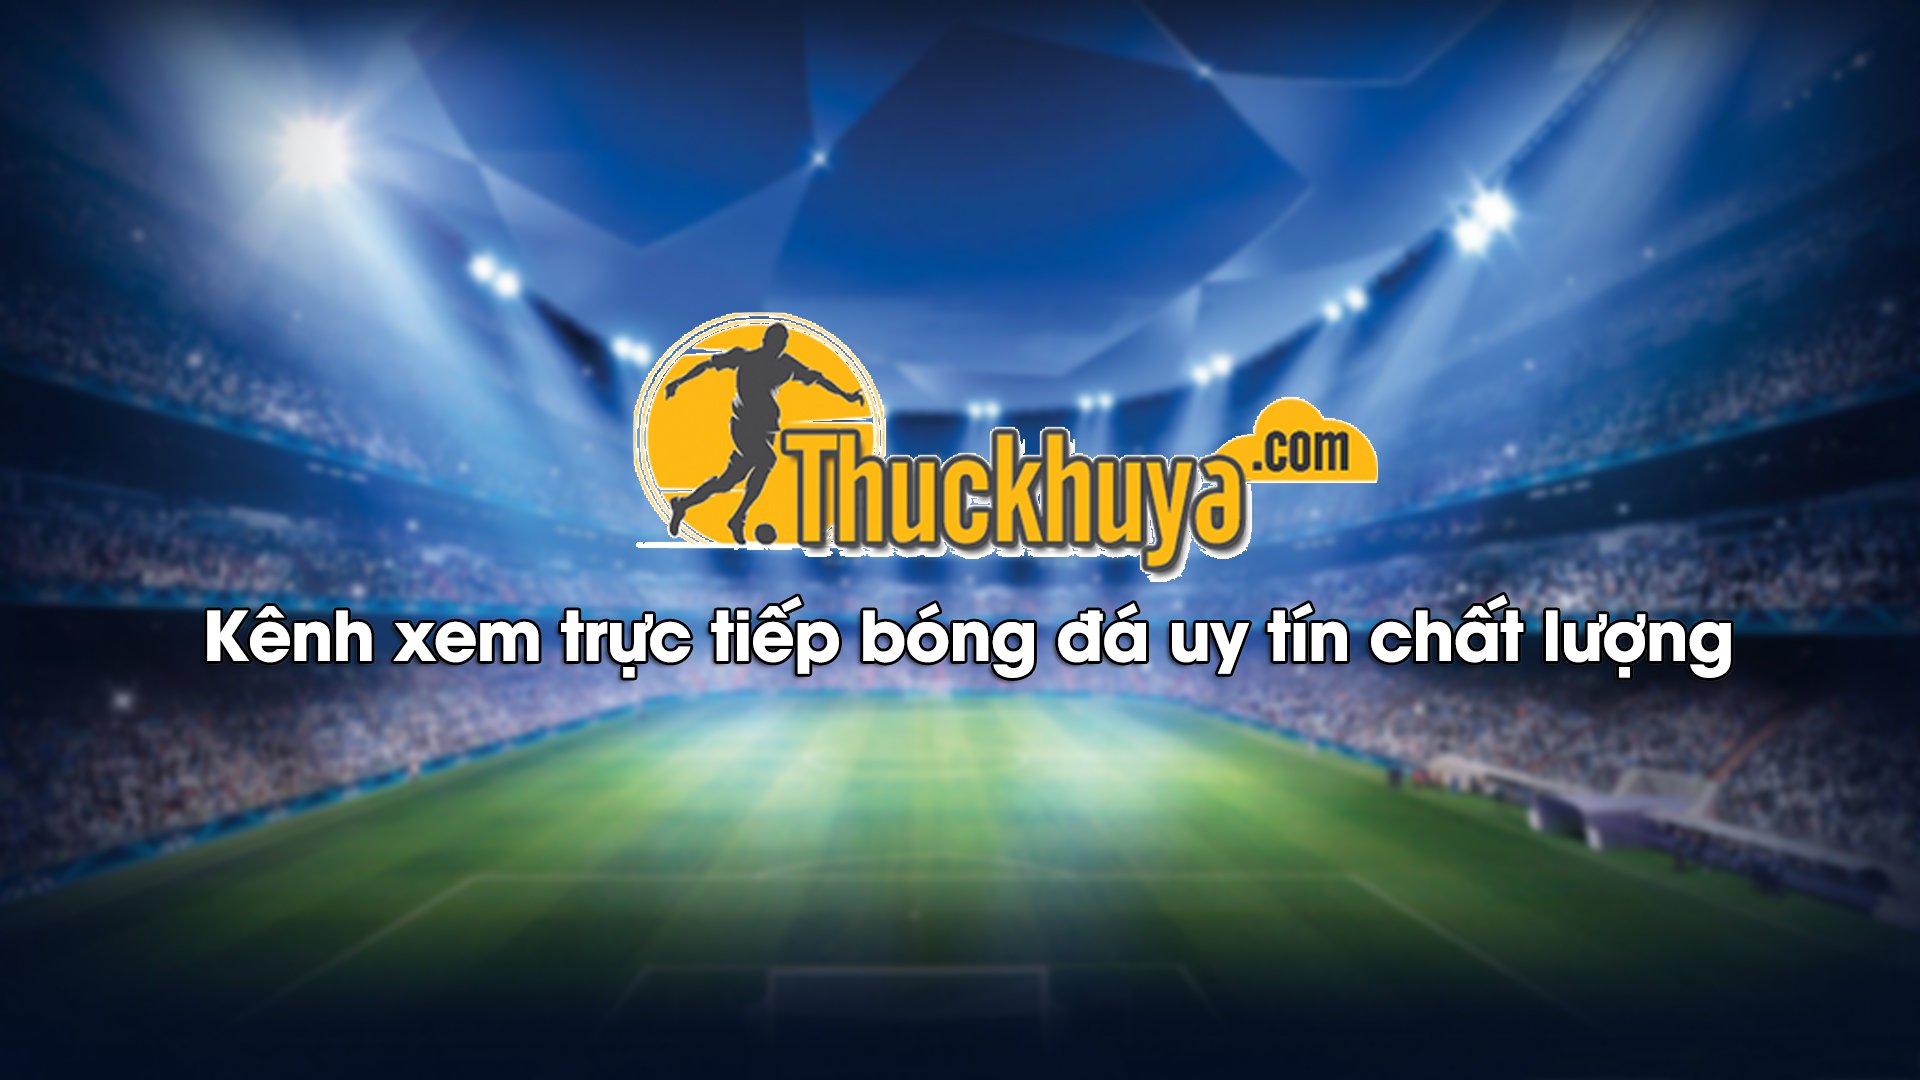 Giới thiệu địa chỉ xem bóng đá trực tuyến hàng đầu Việt Nam – Thức Khuya TV